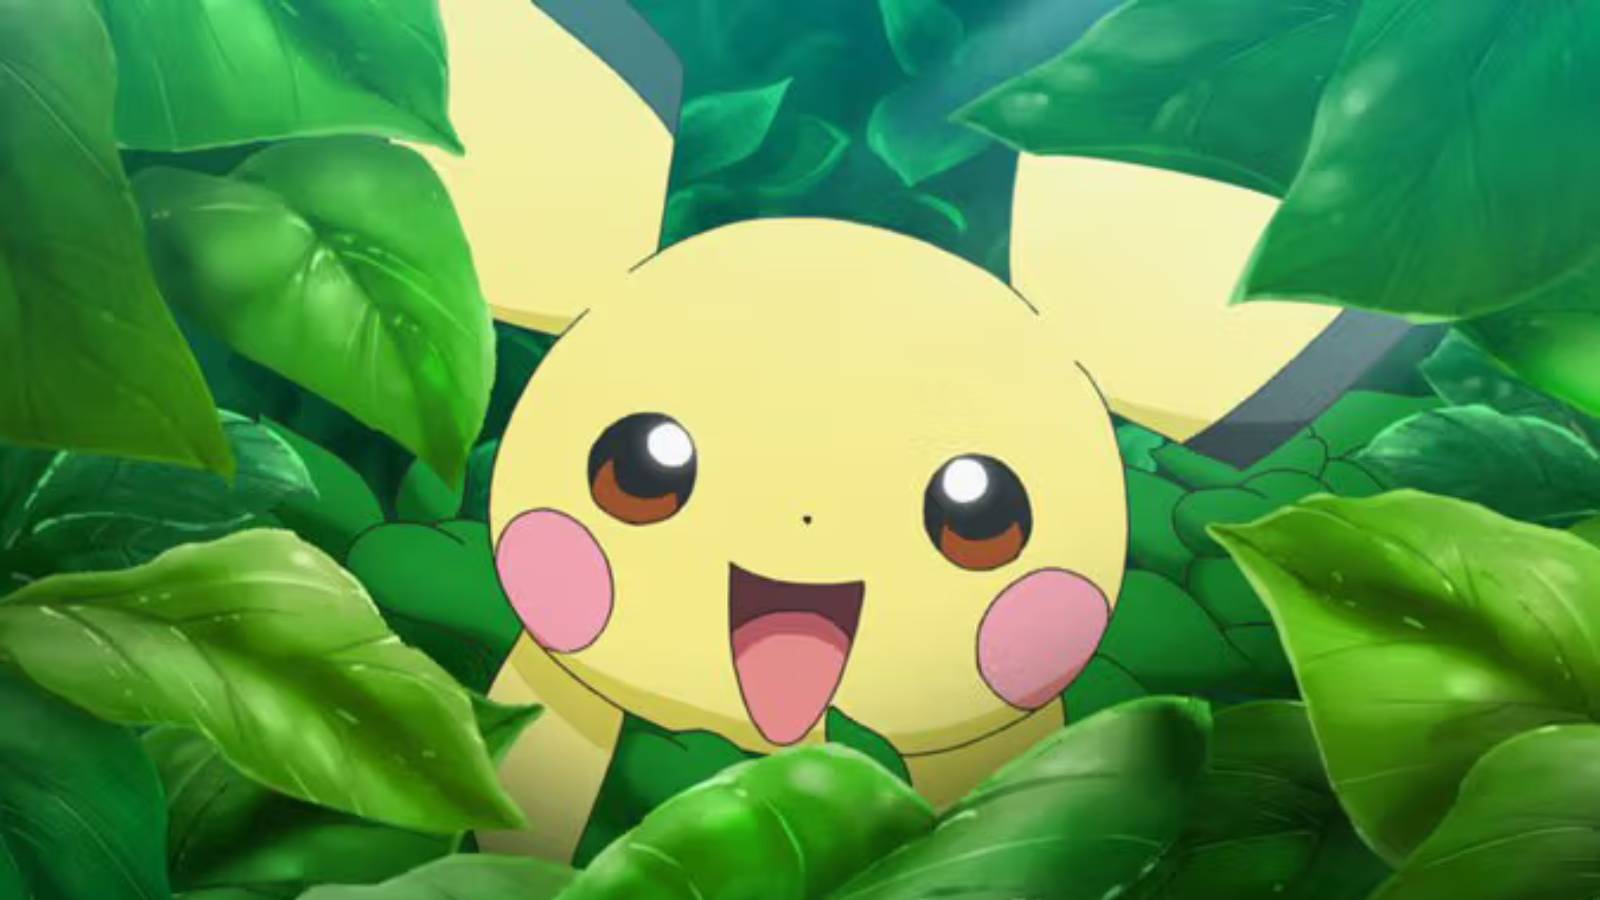 The Pokemon Pichu peers through a bush